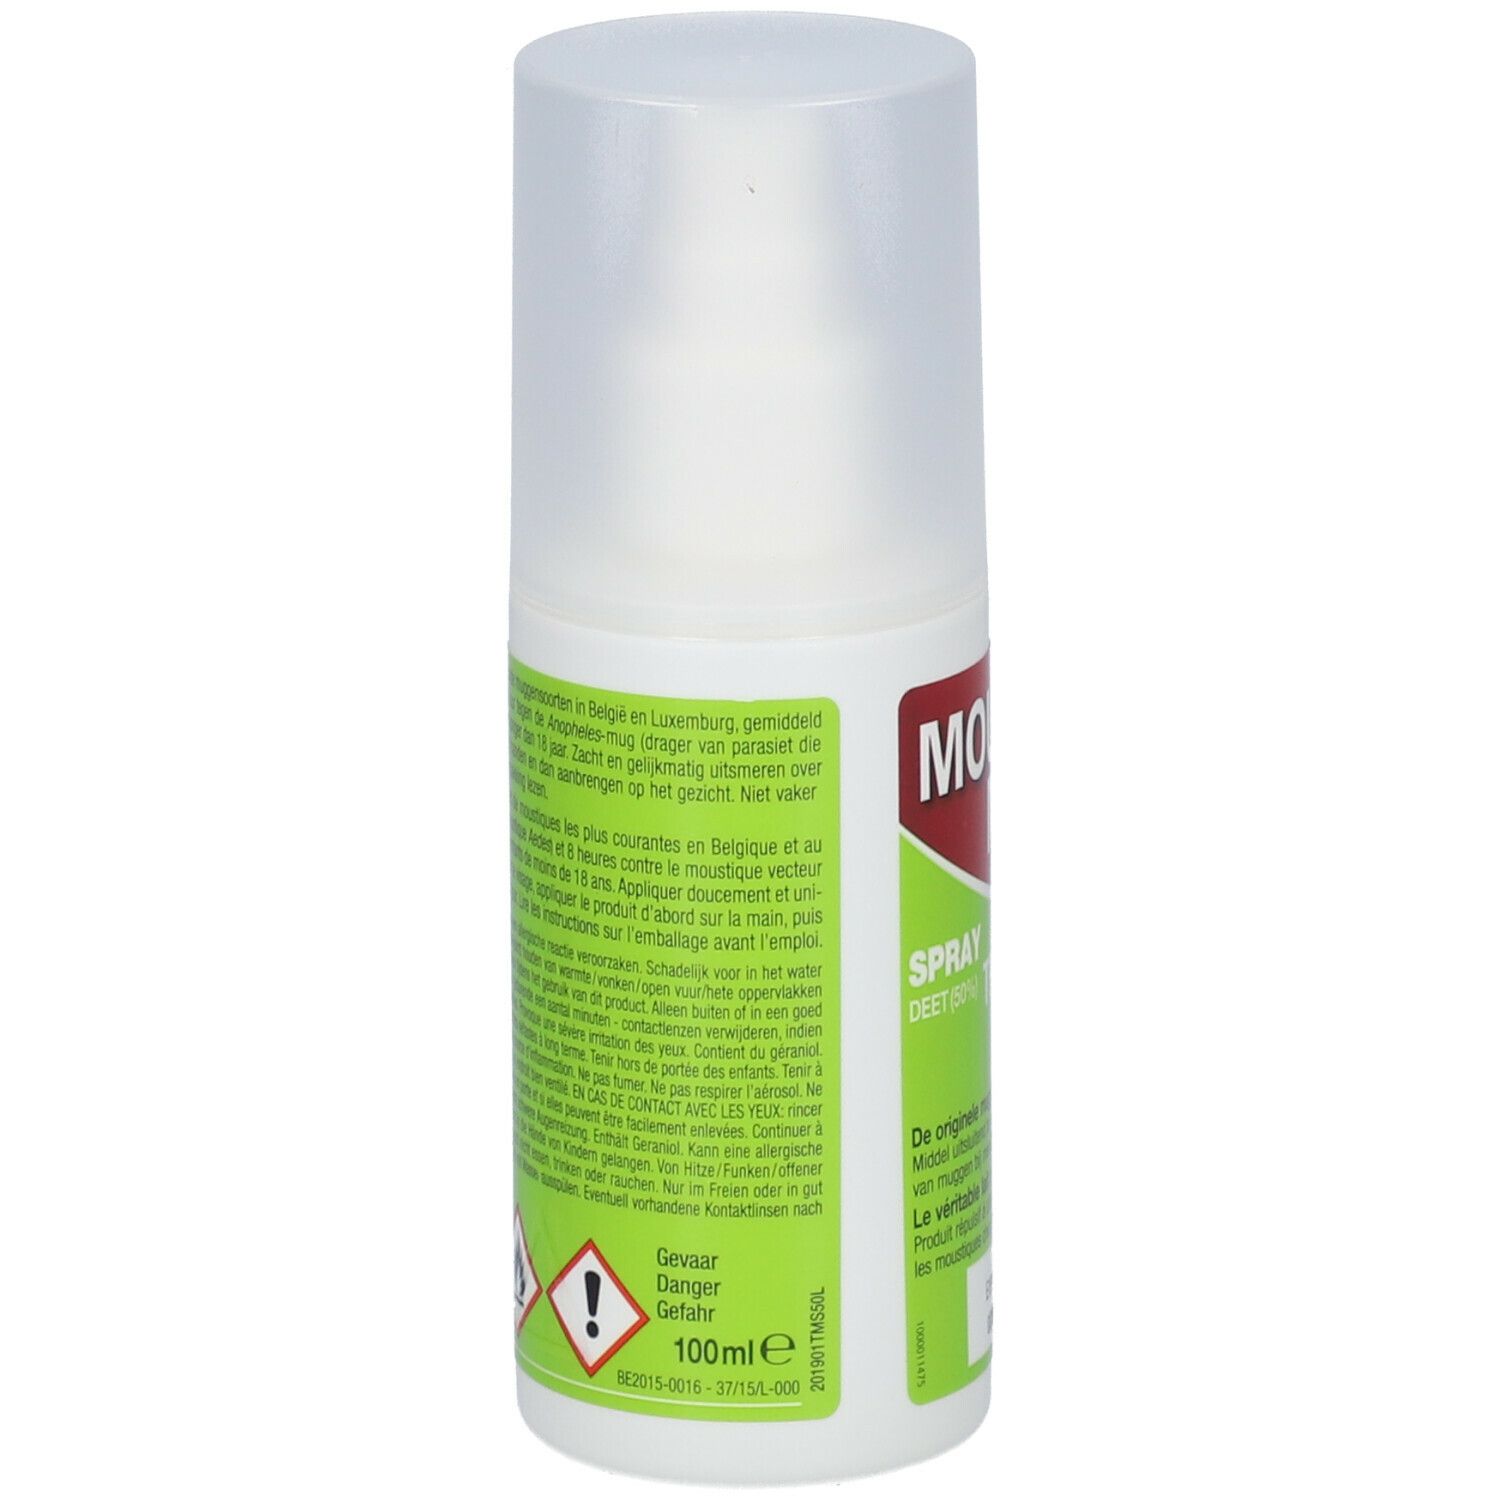 Moustimug Tropical Maxx 50% DEET Anti-Moustiques Roller 50ml Acheter /  Commander En Ligne ✓